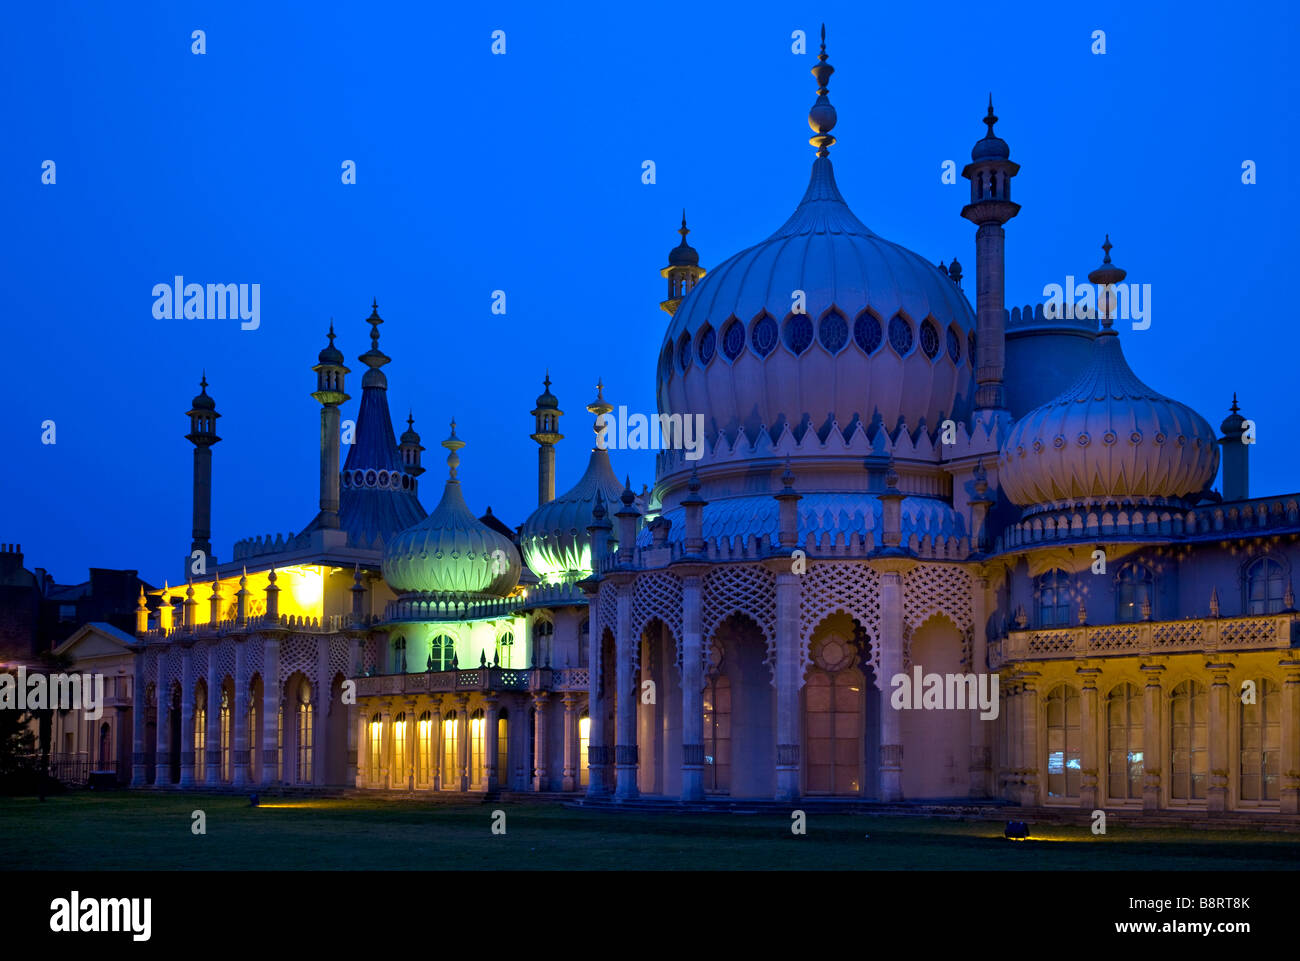 Royal Pavilion, au crépuscule, Brighton, East Sussex, Angleterre Banque D'Images